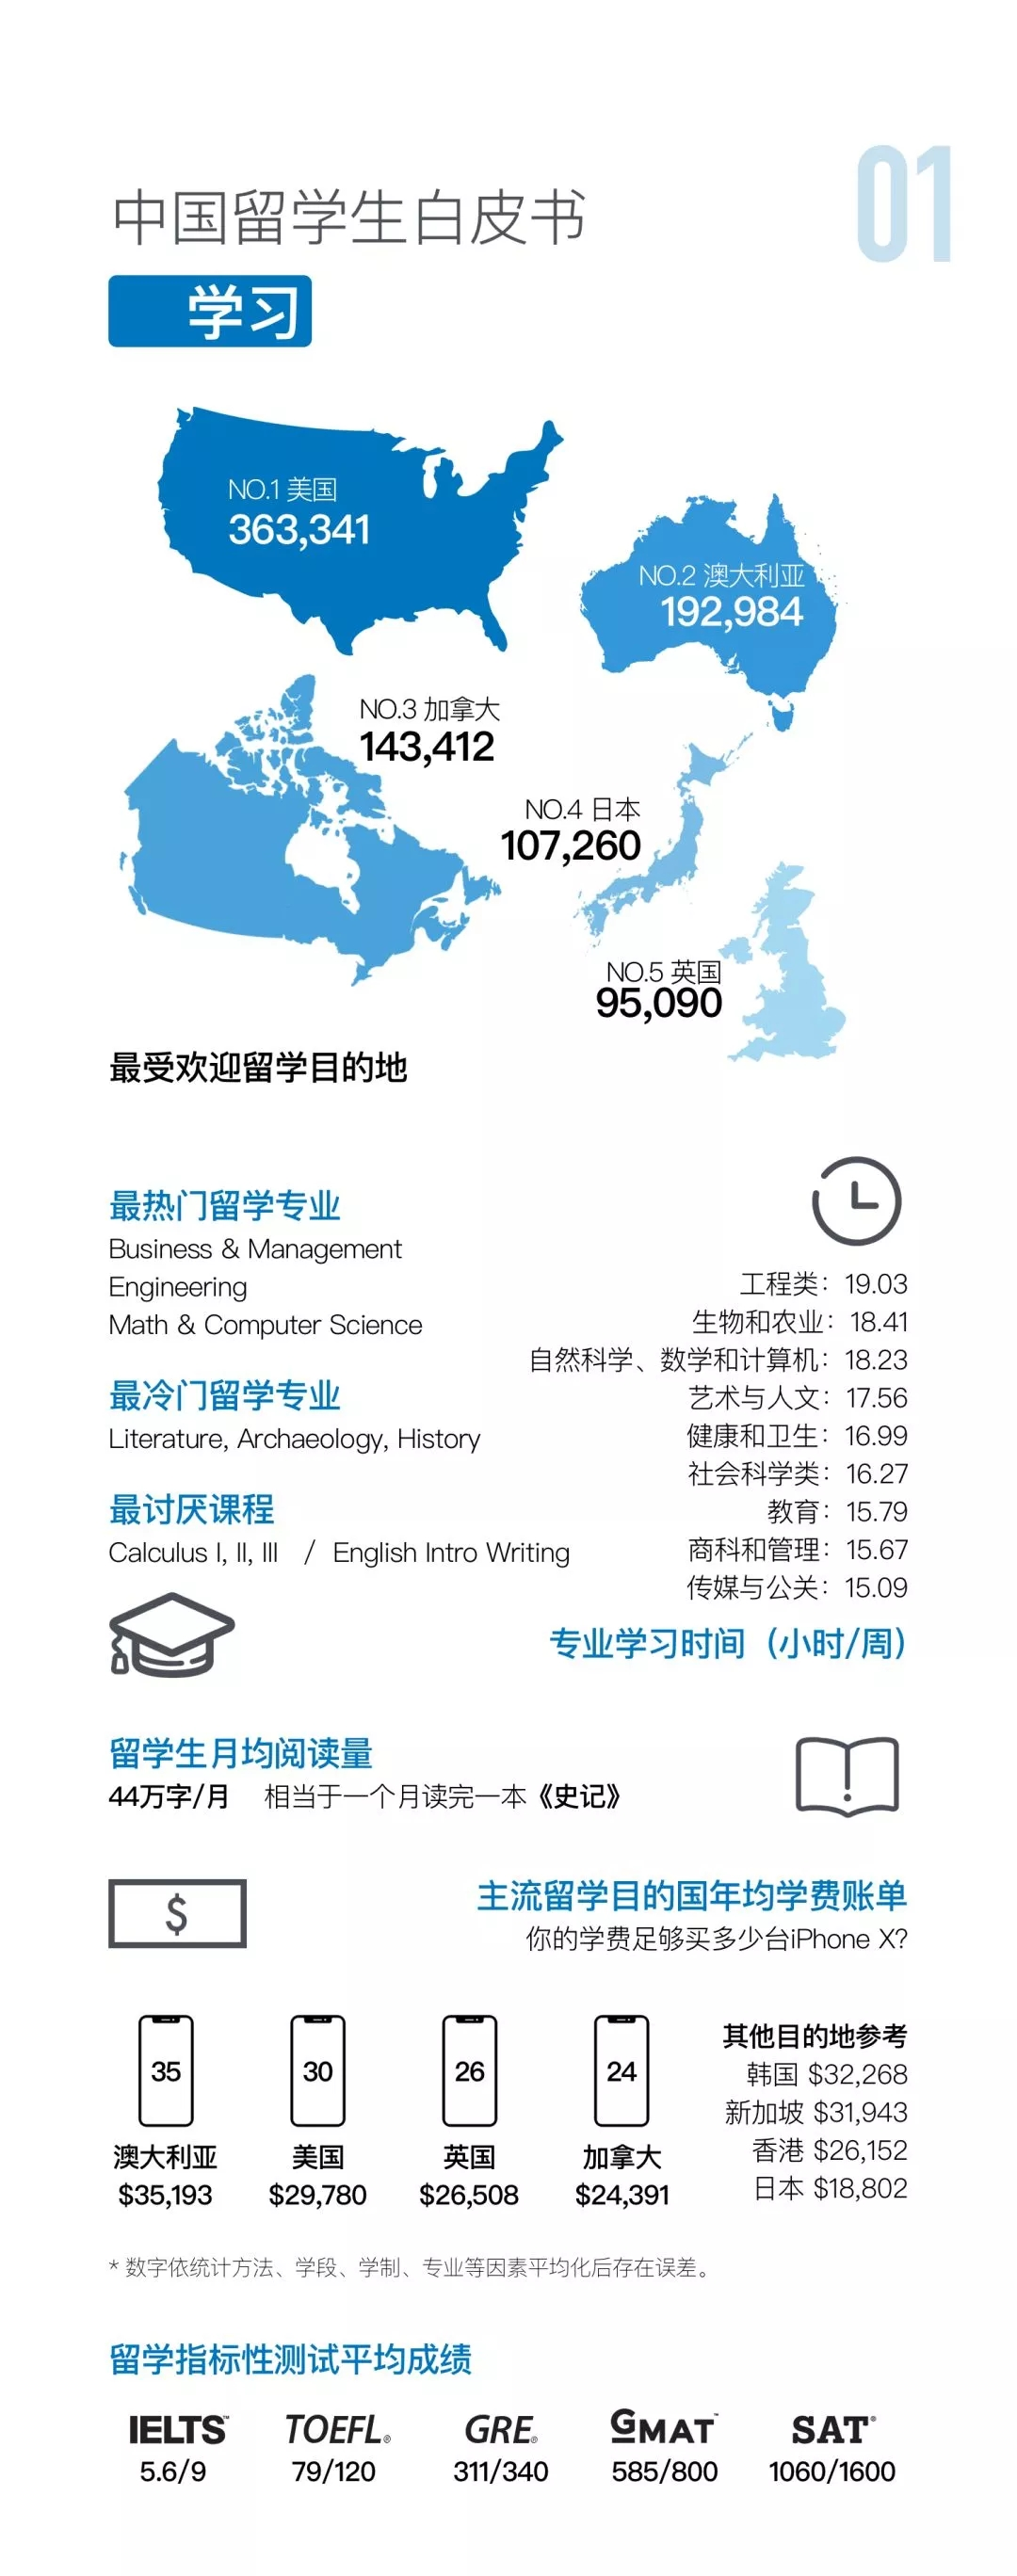 中国出国留学生白皮书学习专业选择情况数据